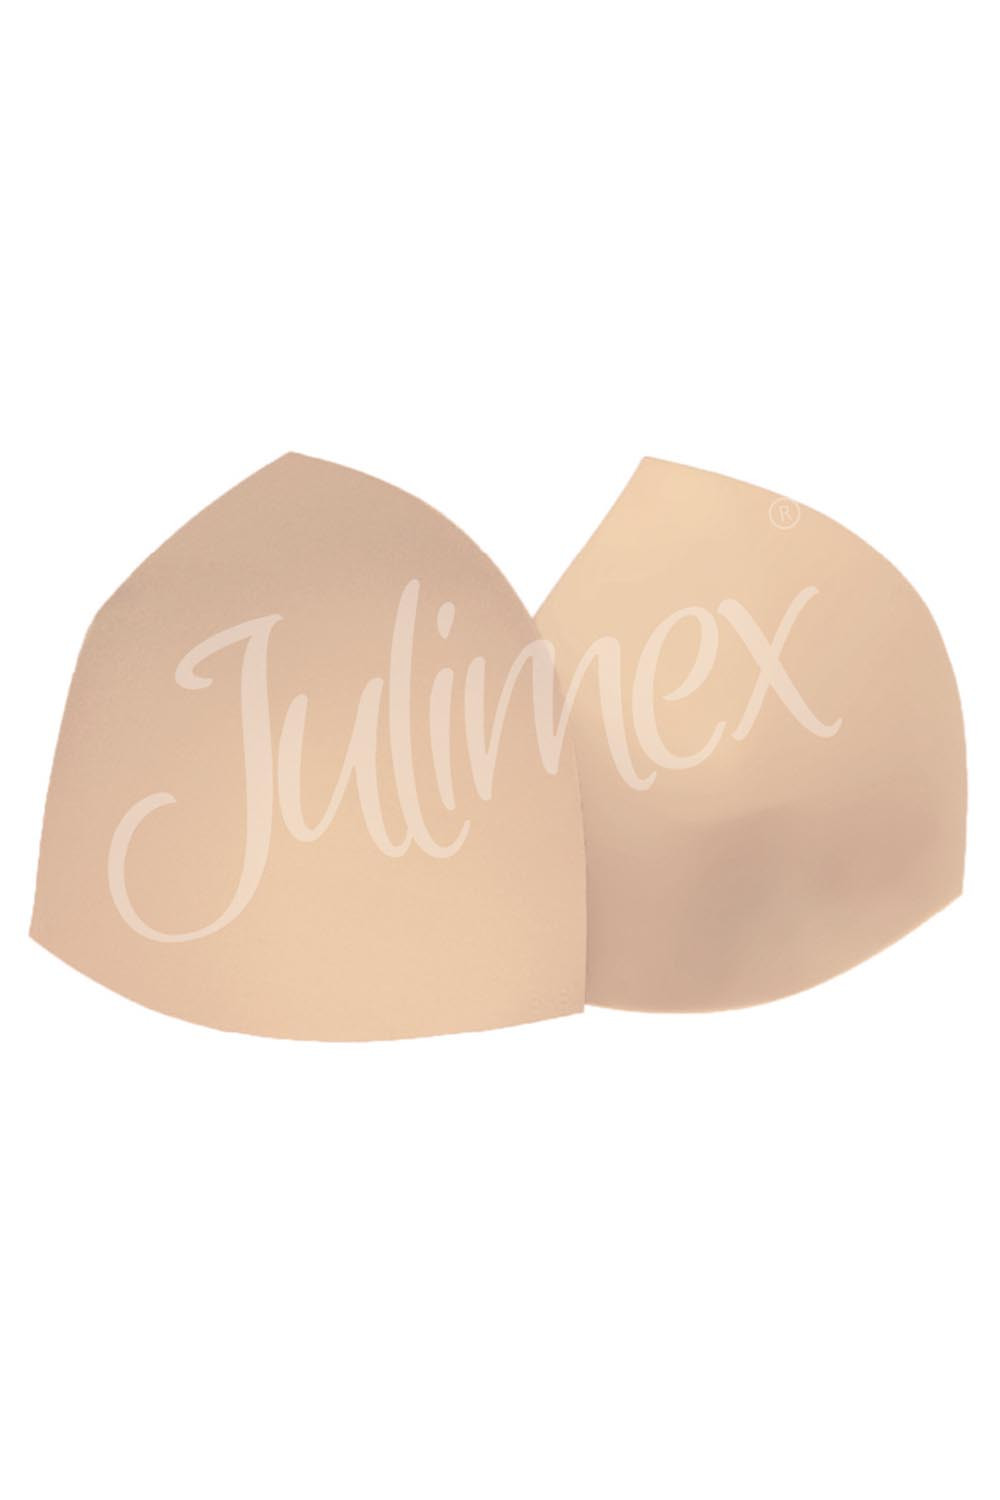 Julimex WS-11 Wkładki bikini kolor:beż A/B